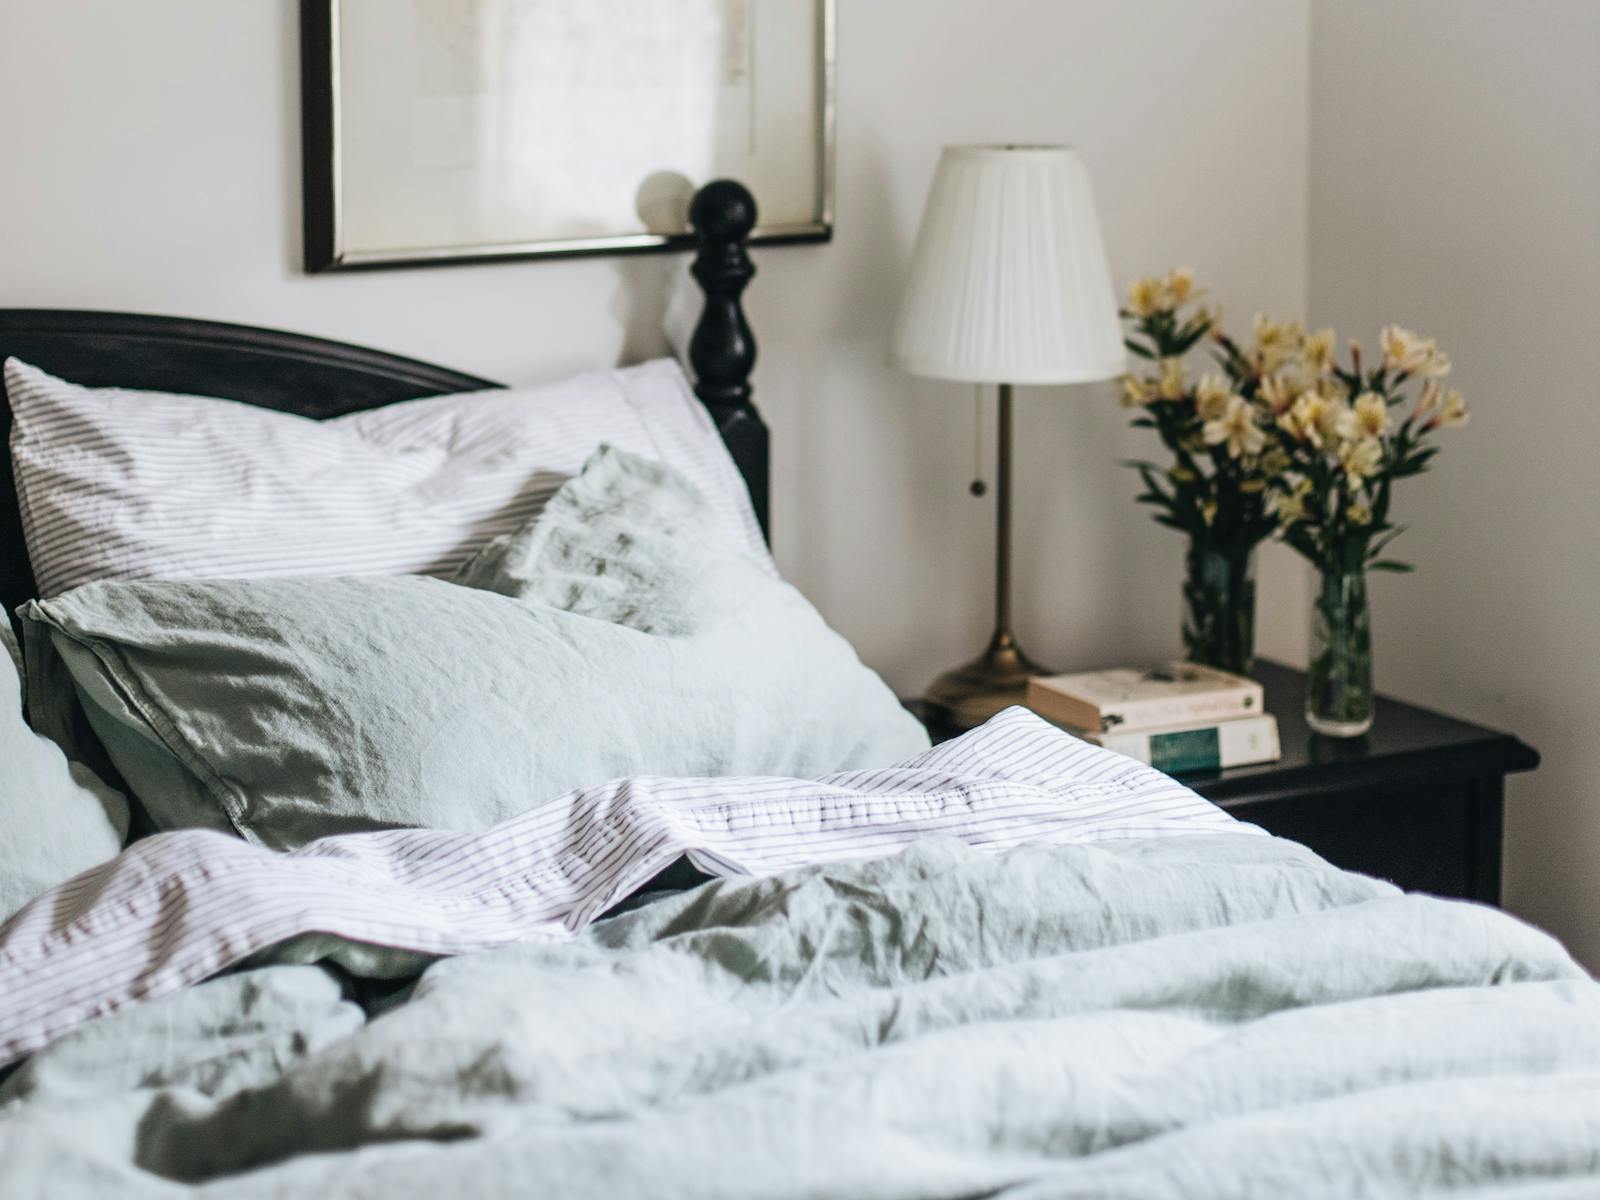 Queen bedroom with luxury linen